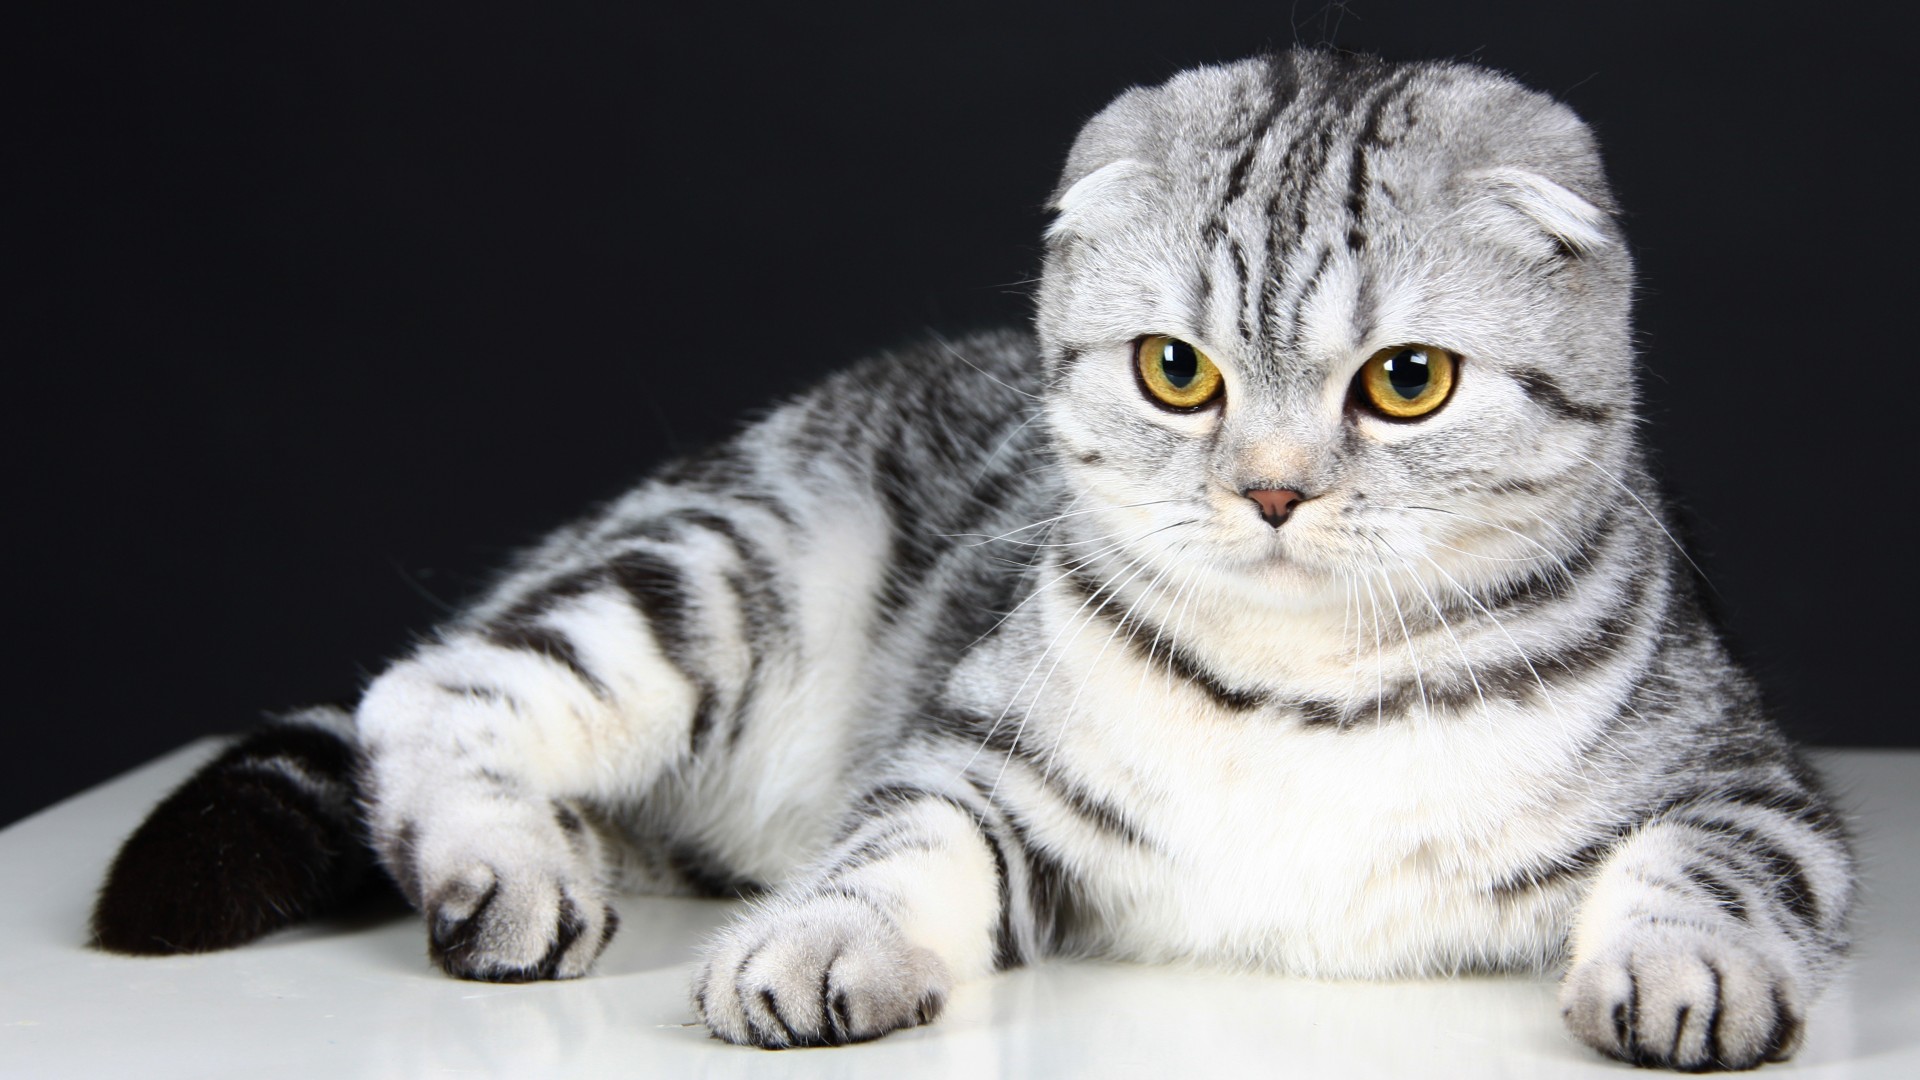 Породы кошек вислоухие с фотографиями и названиями пород